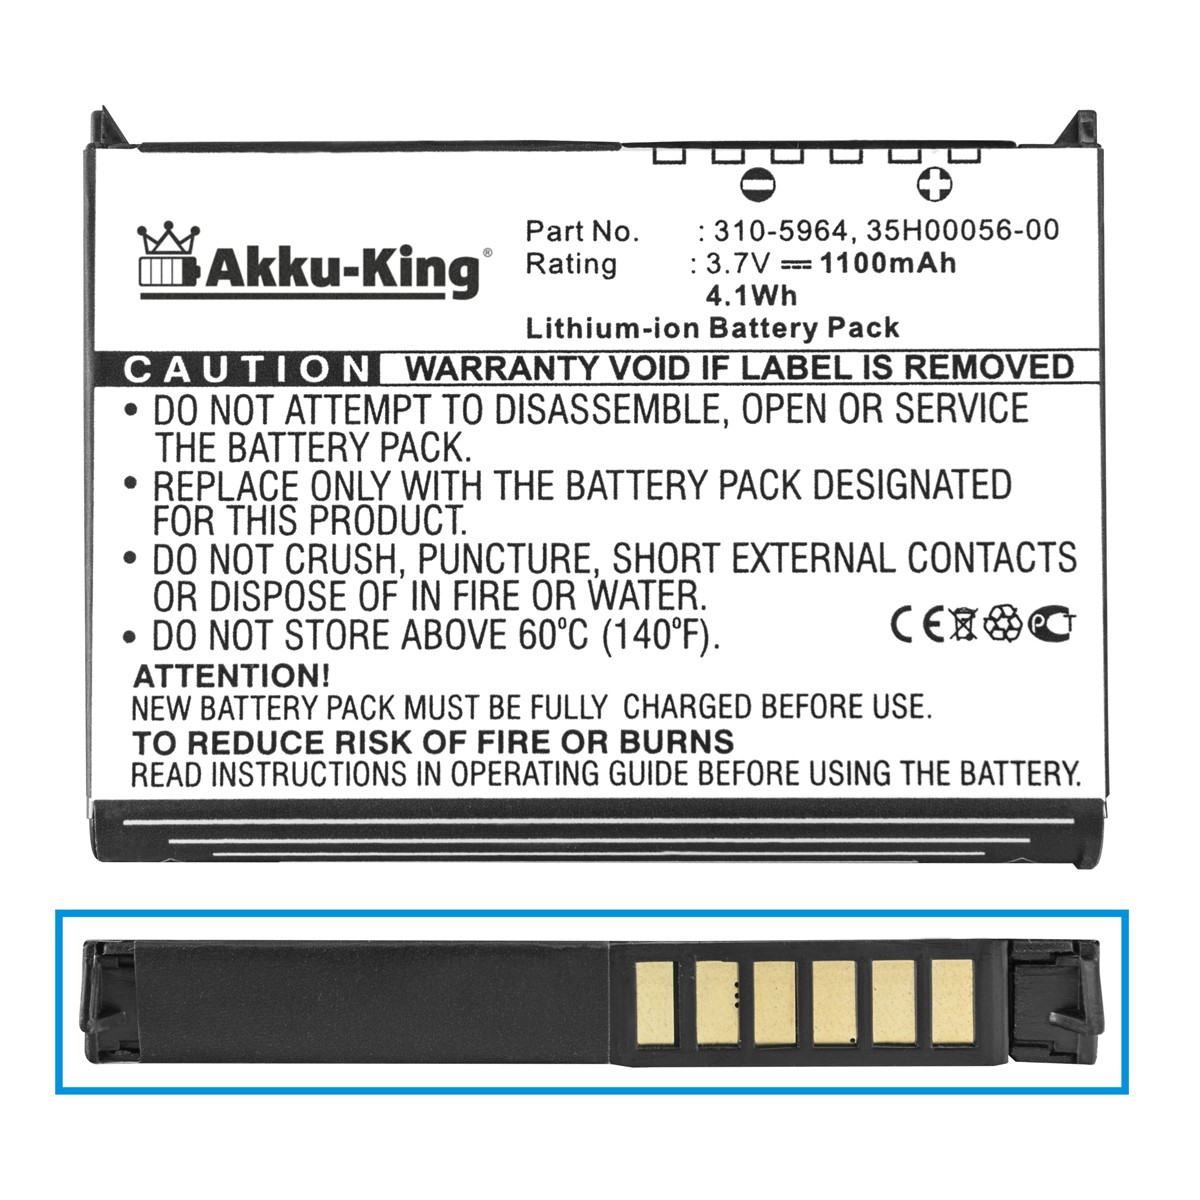 AKKU-KING Akku kompatibel mit Volt, Handy-Akku, 310-5965 3.7 1100mAh Li-Ion Dell